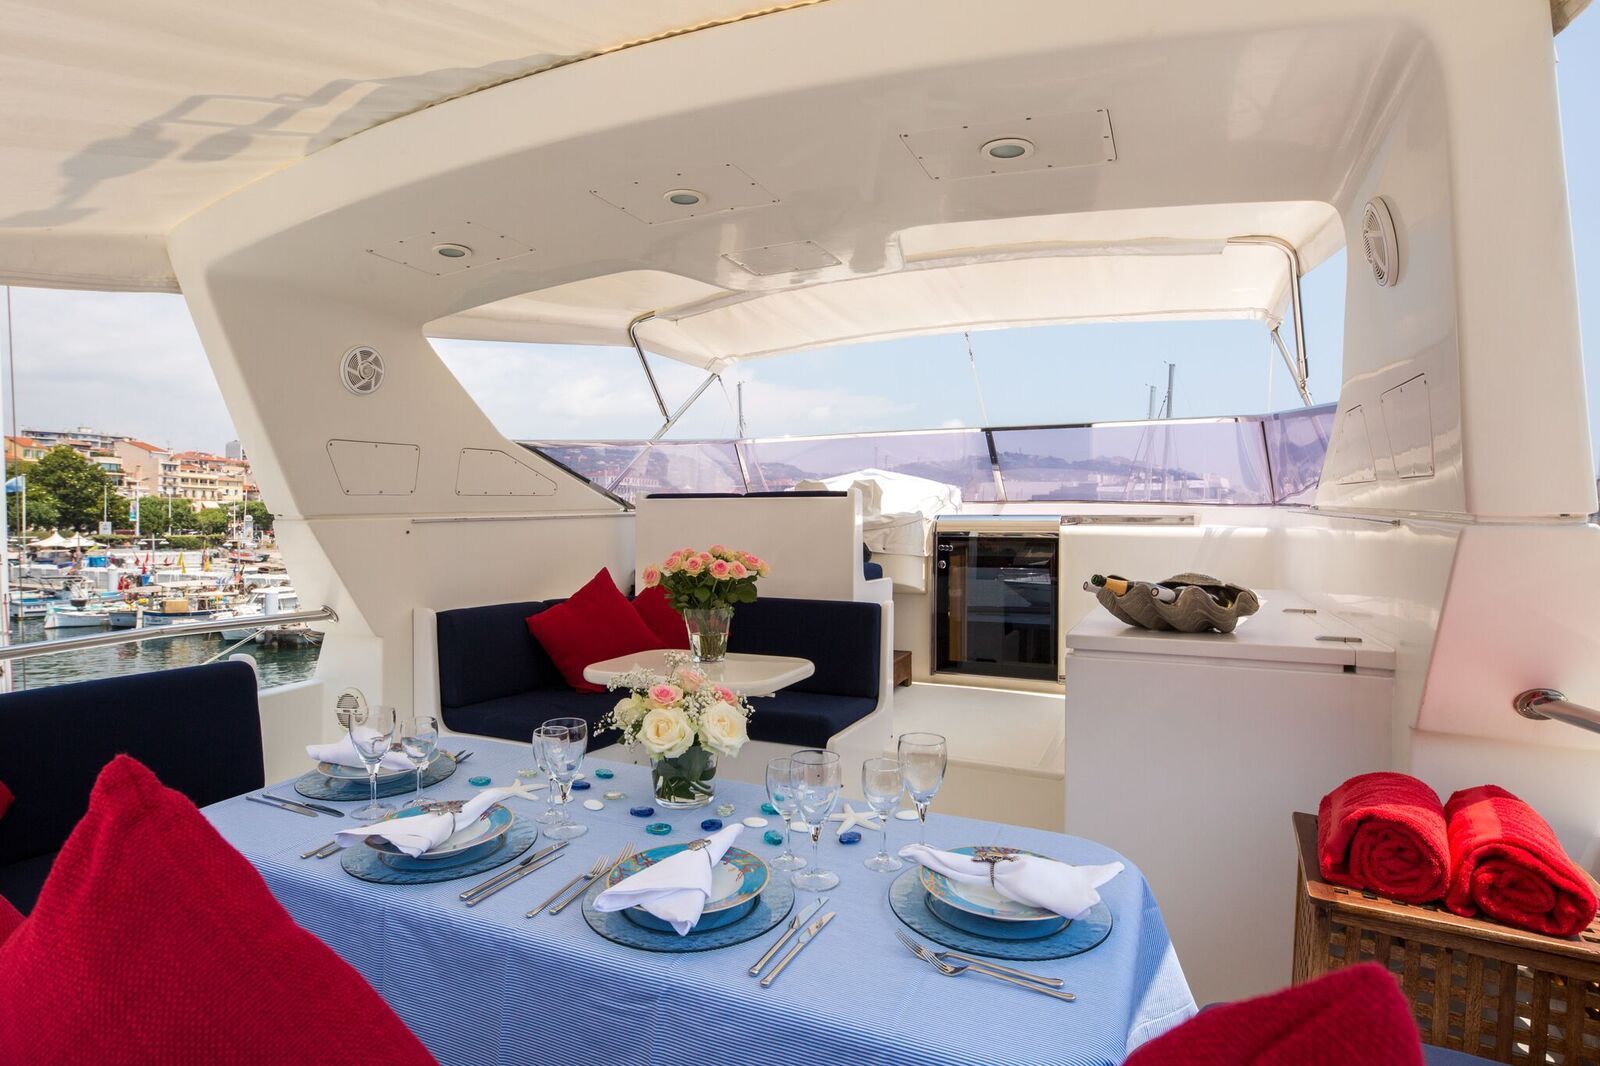 INDULGENCE OF POOLE Mangusta 86 Luxury Superyacht Flybridge